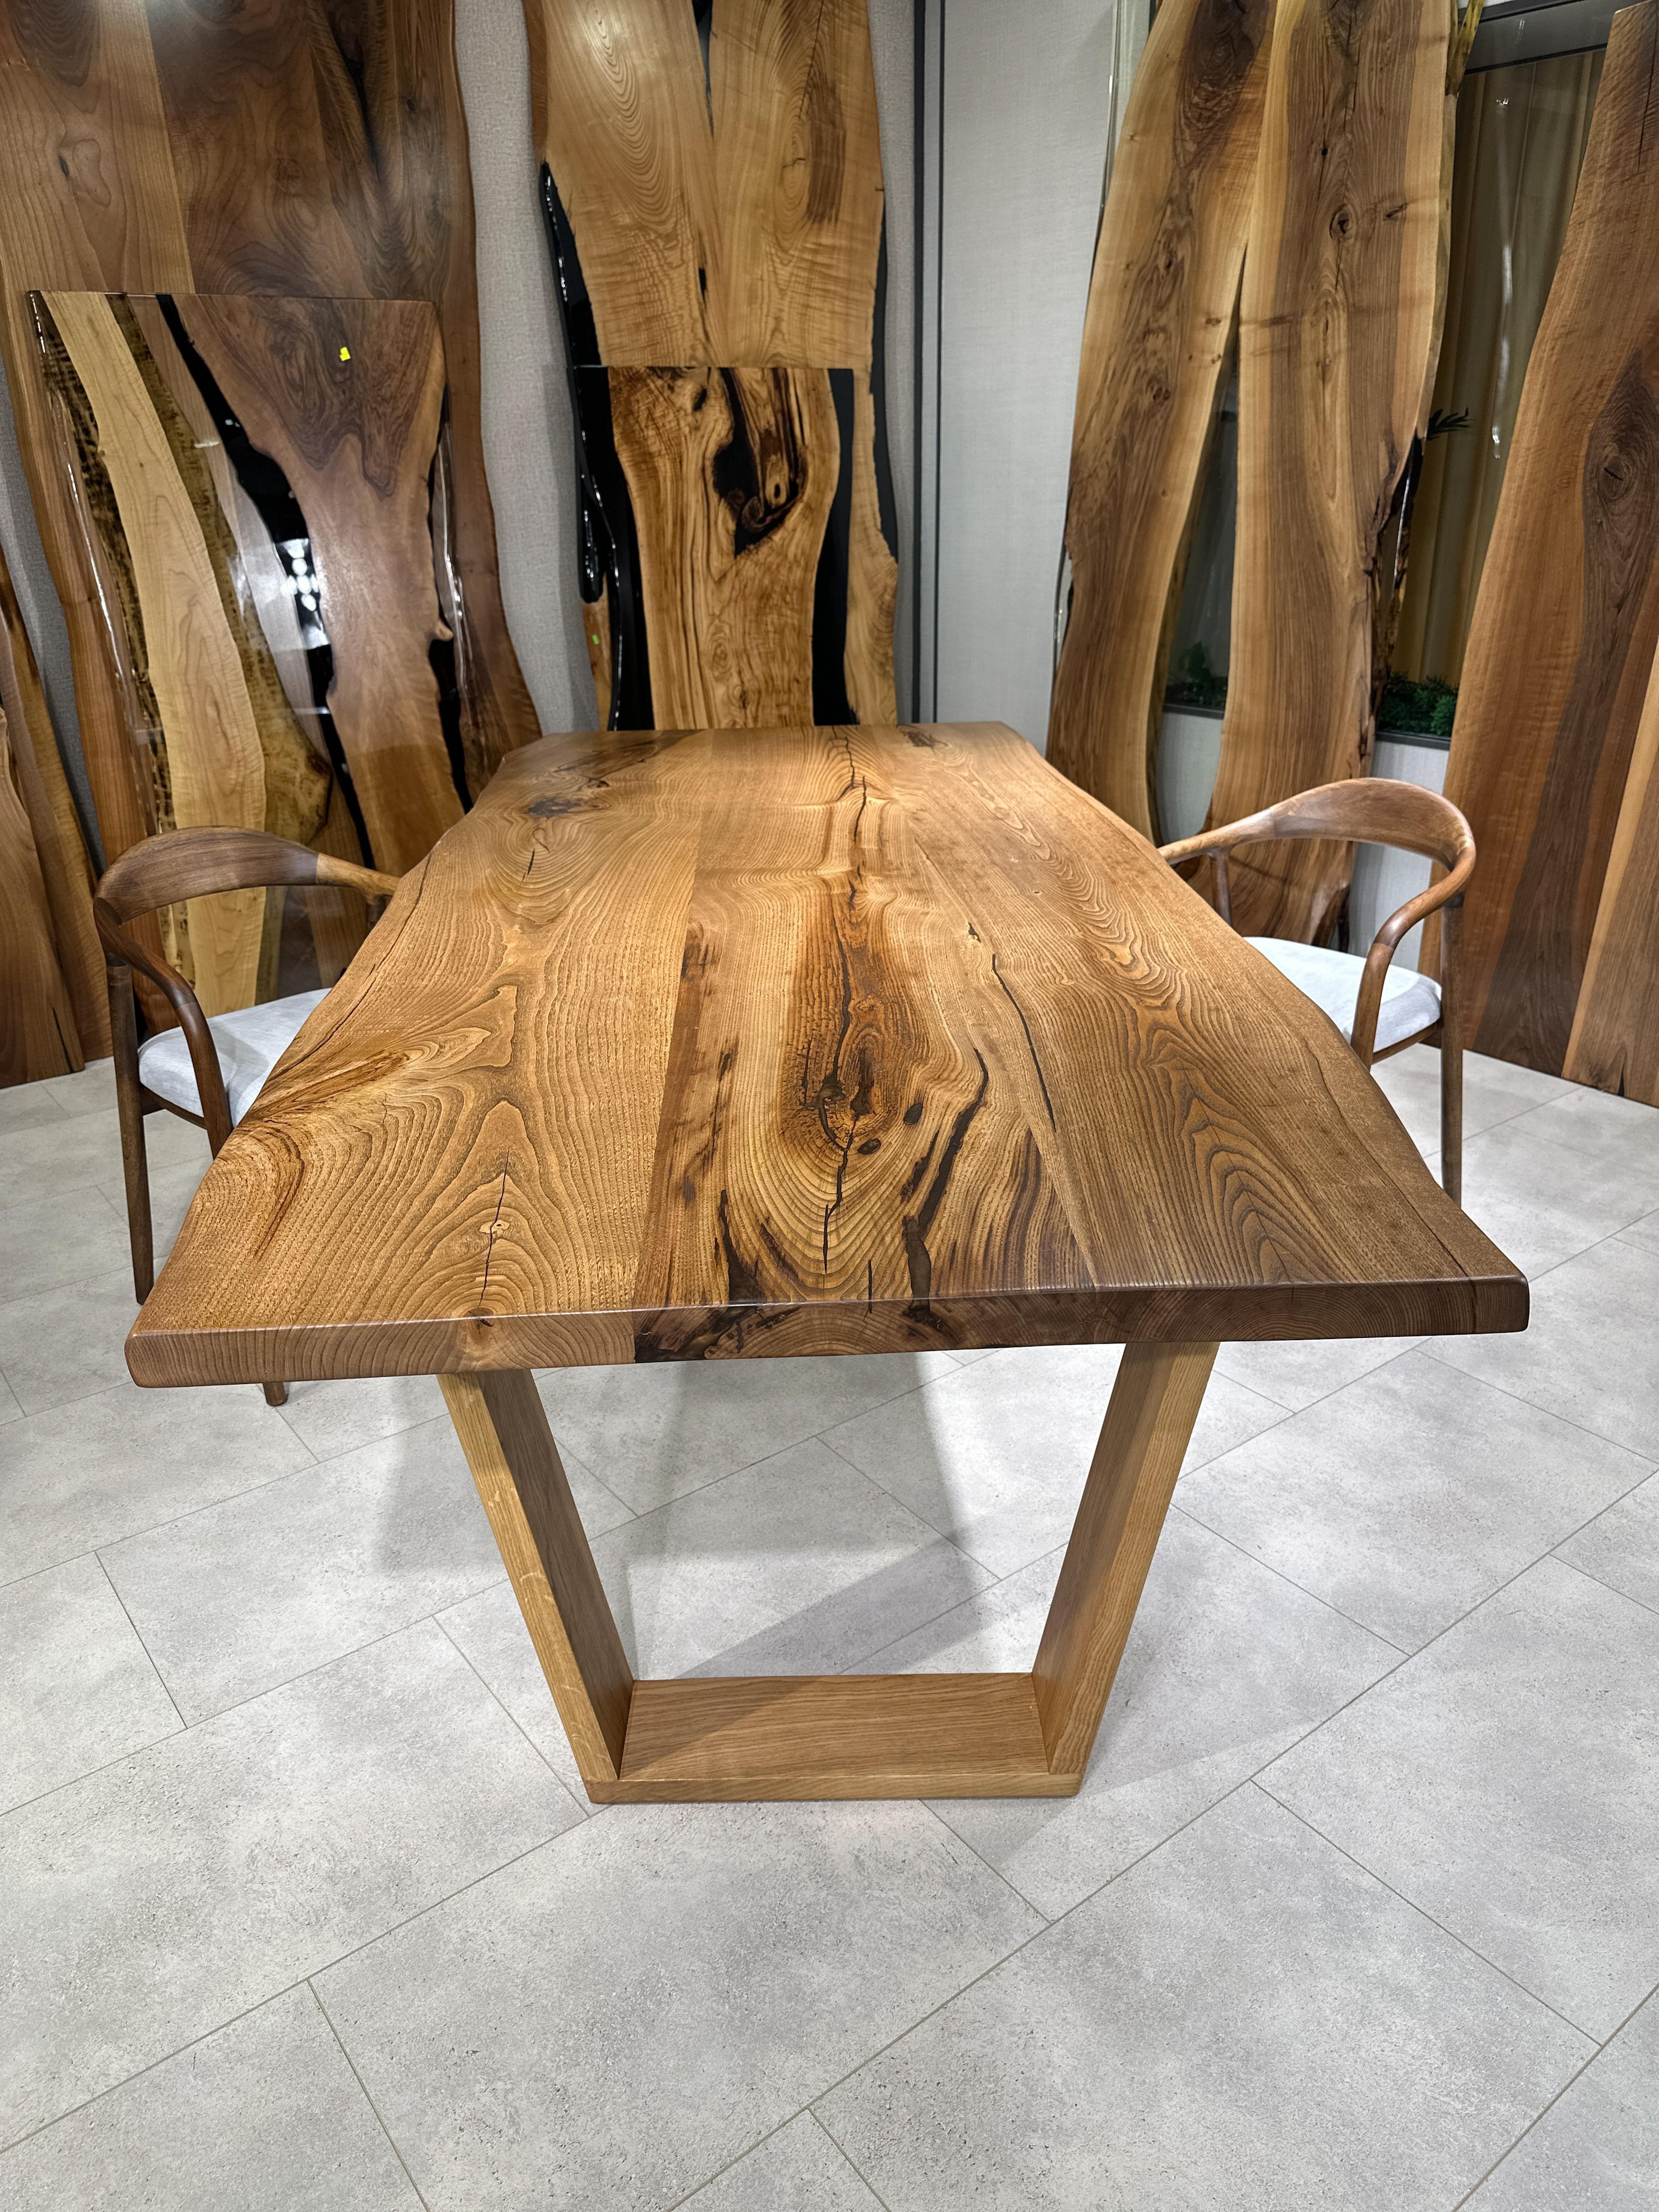 Table de salle à manger en châtaignier à bord vif en résine époxy sur mesure

Cette table est fabriquée en bois de noyer. Les veines et la texture du bois décrivent l'aspect d'un bois de noyer naturel.
Elle peut être utilisée comme table de salle à